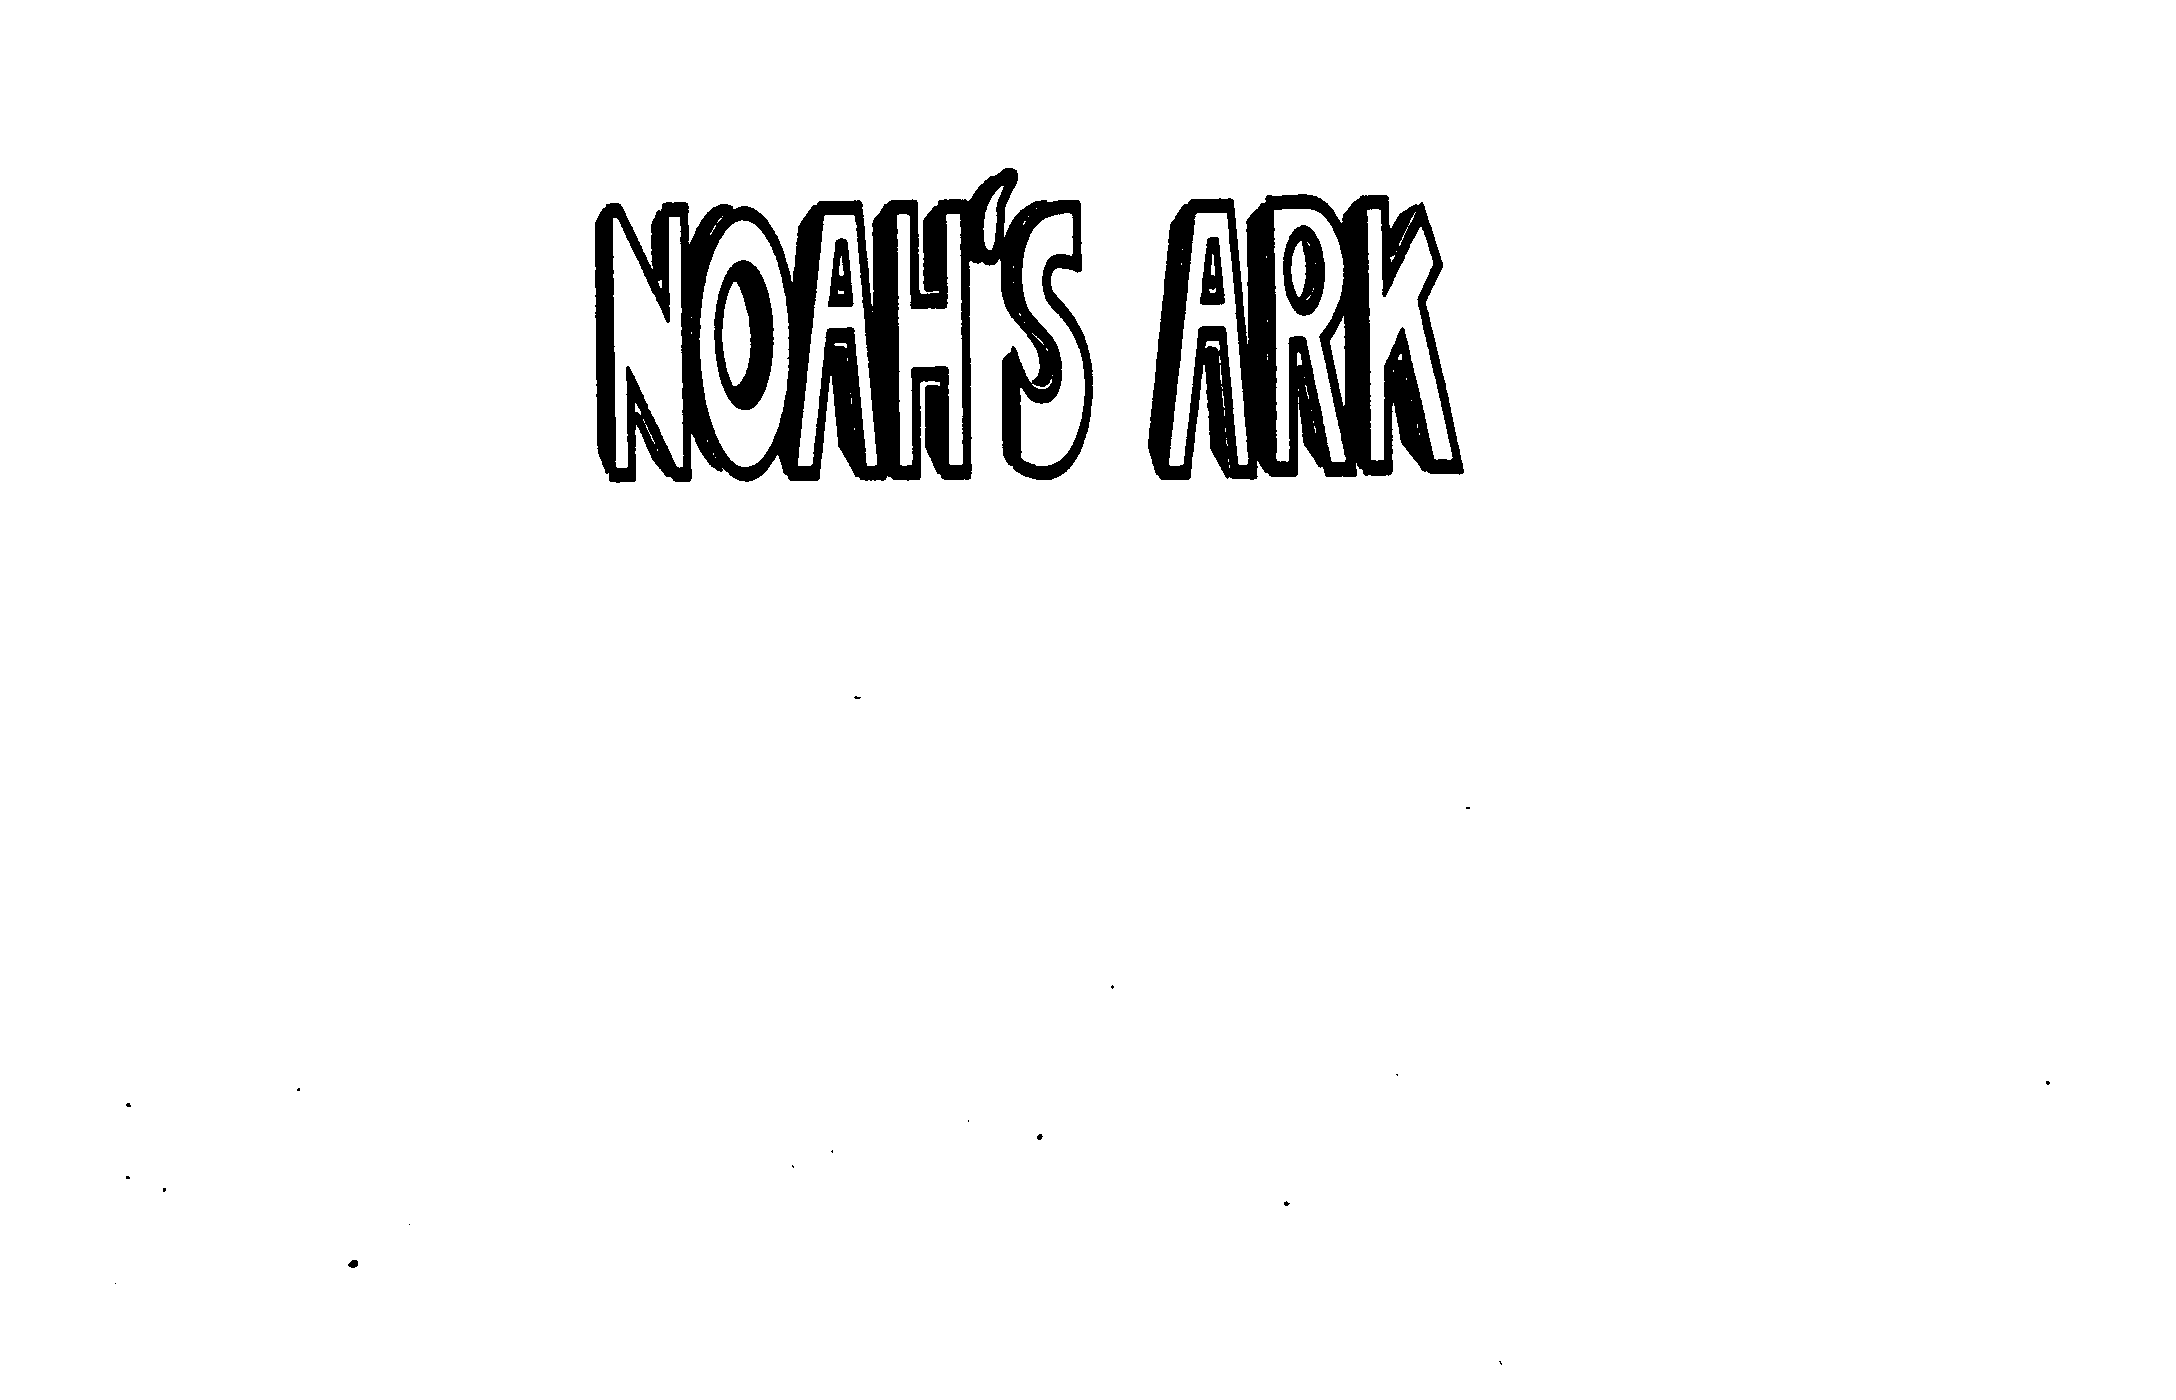 NOAH'S ARK